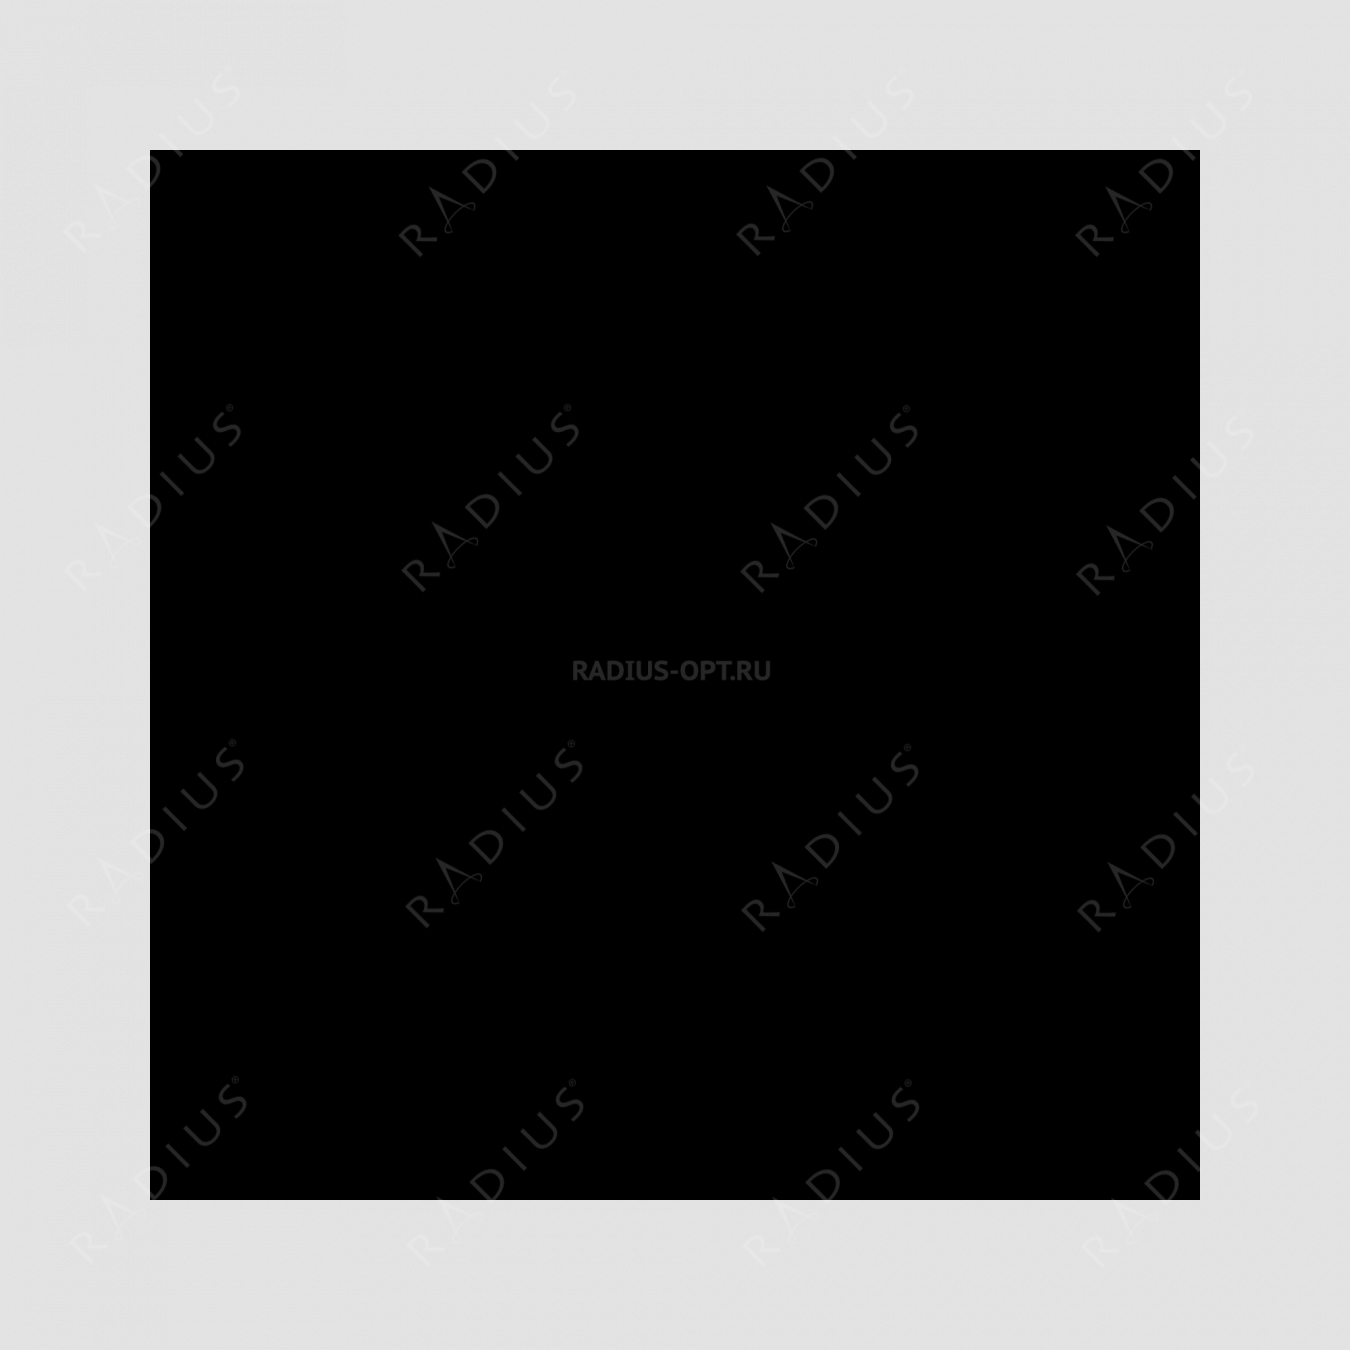 Кастрюля с крышкой, овальная, диаметр 31 см, объем 6,0 л, чугун с эмалированным покрытием, цвет черный, серия Noir mat, INVICTA, Франция